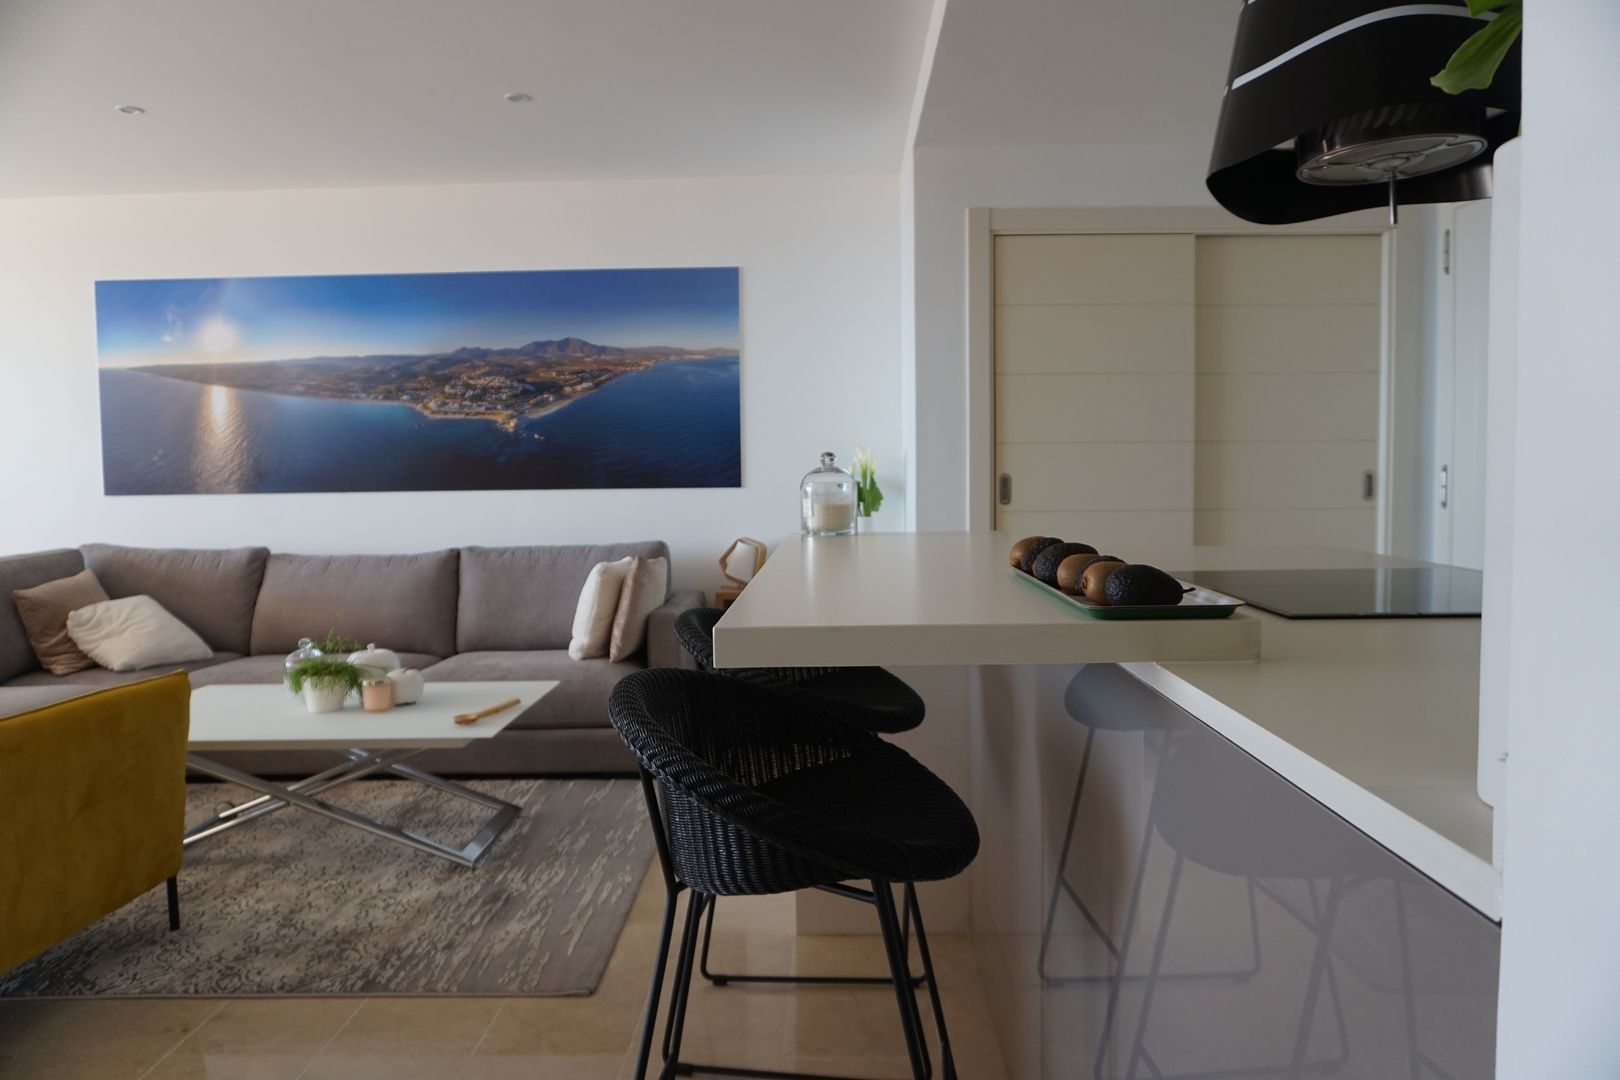 Proyecto e instalación de cocina moderna abierta al salón en Málaga, Decodan - Estudio de cocinas y armarios en Estepona y Marbella Decodan - Estudio de cocinas y armarios en Estepona y Marbella Cucina attrezzata